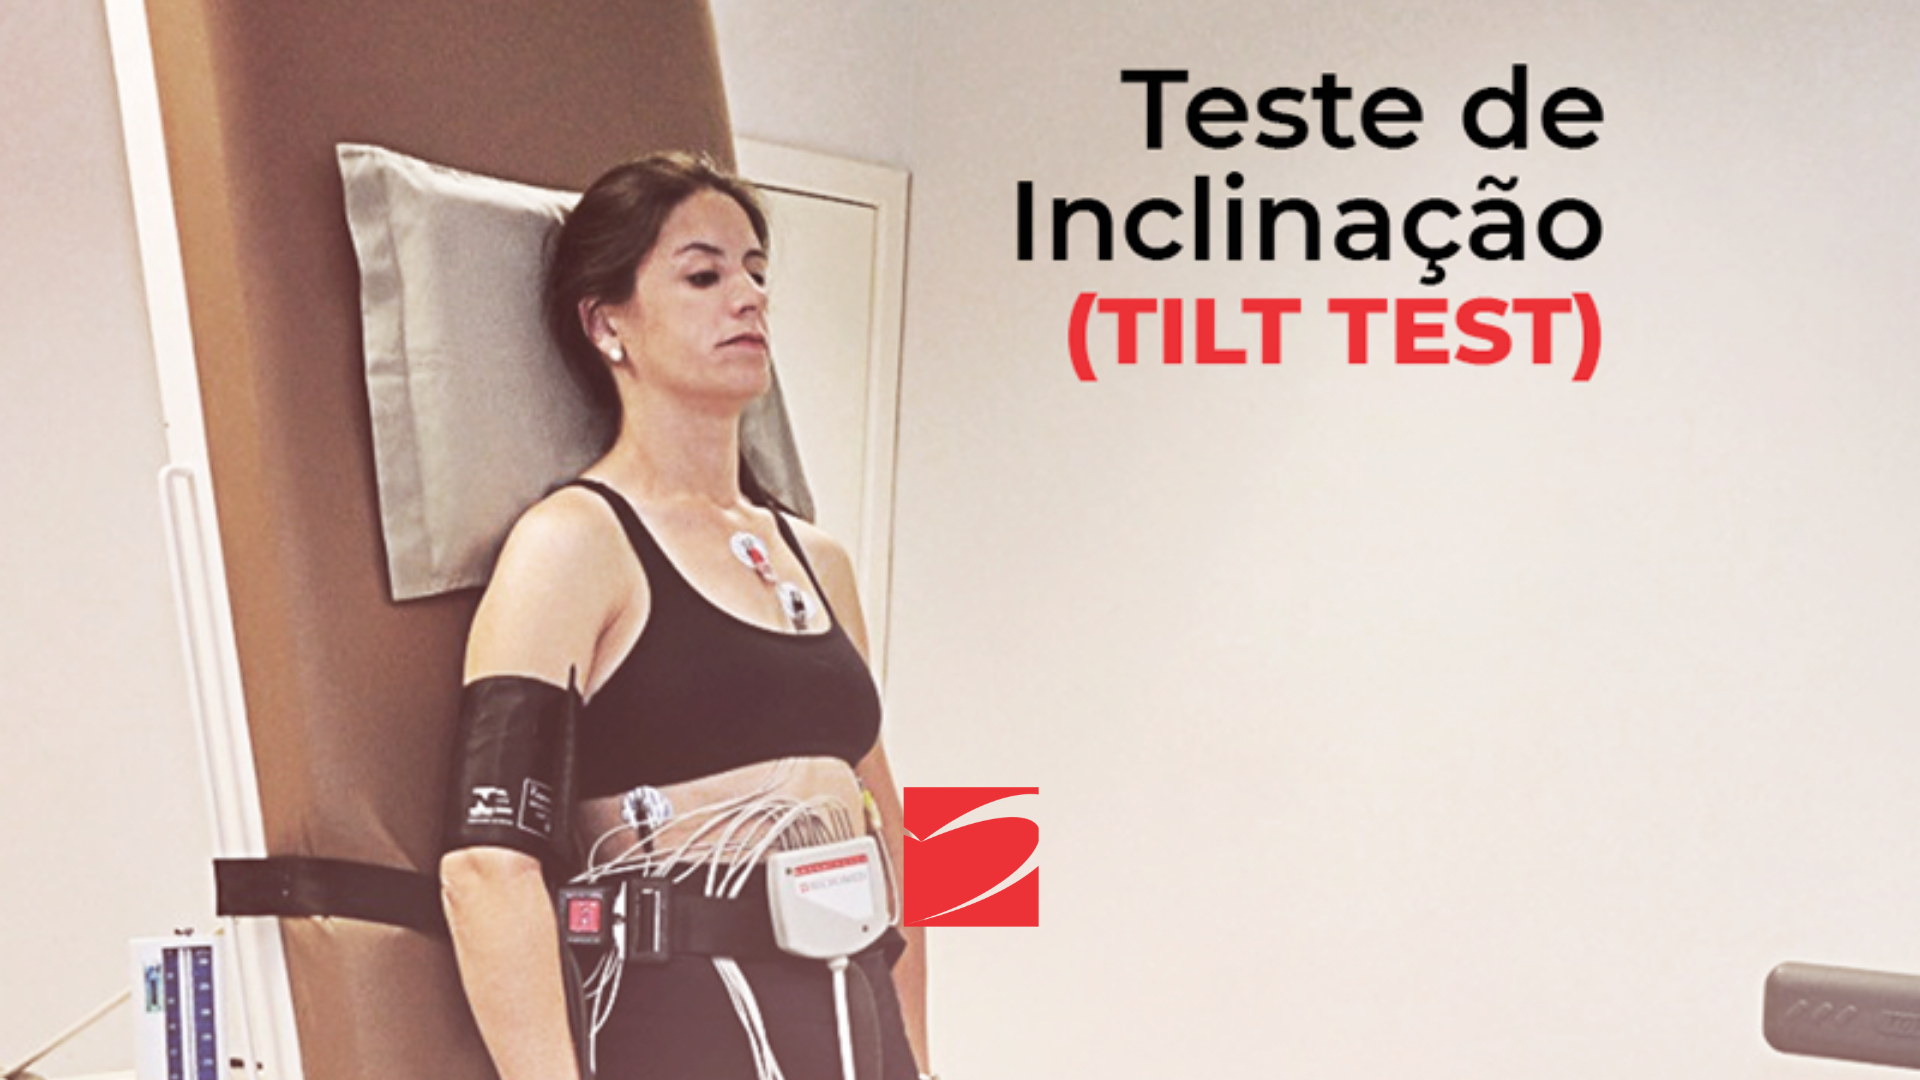 Hospital SOS Cárdio - O Teste de Inclinação, chamado Tilt Test, é um exame  complementar utilizado para diagnosticar a causa e definir o tratamento de  pacientes com sintomas de tonturas e/ou desmaios.